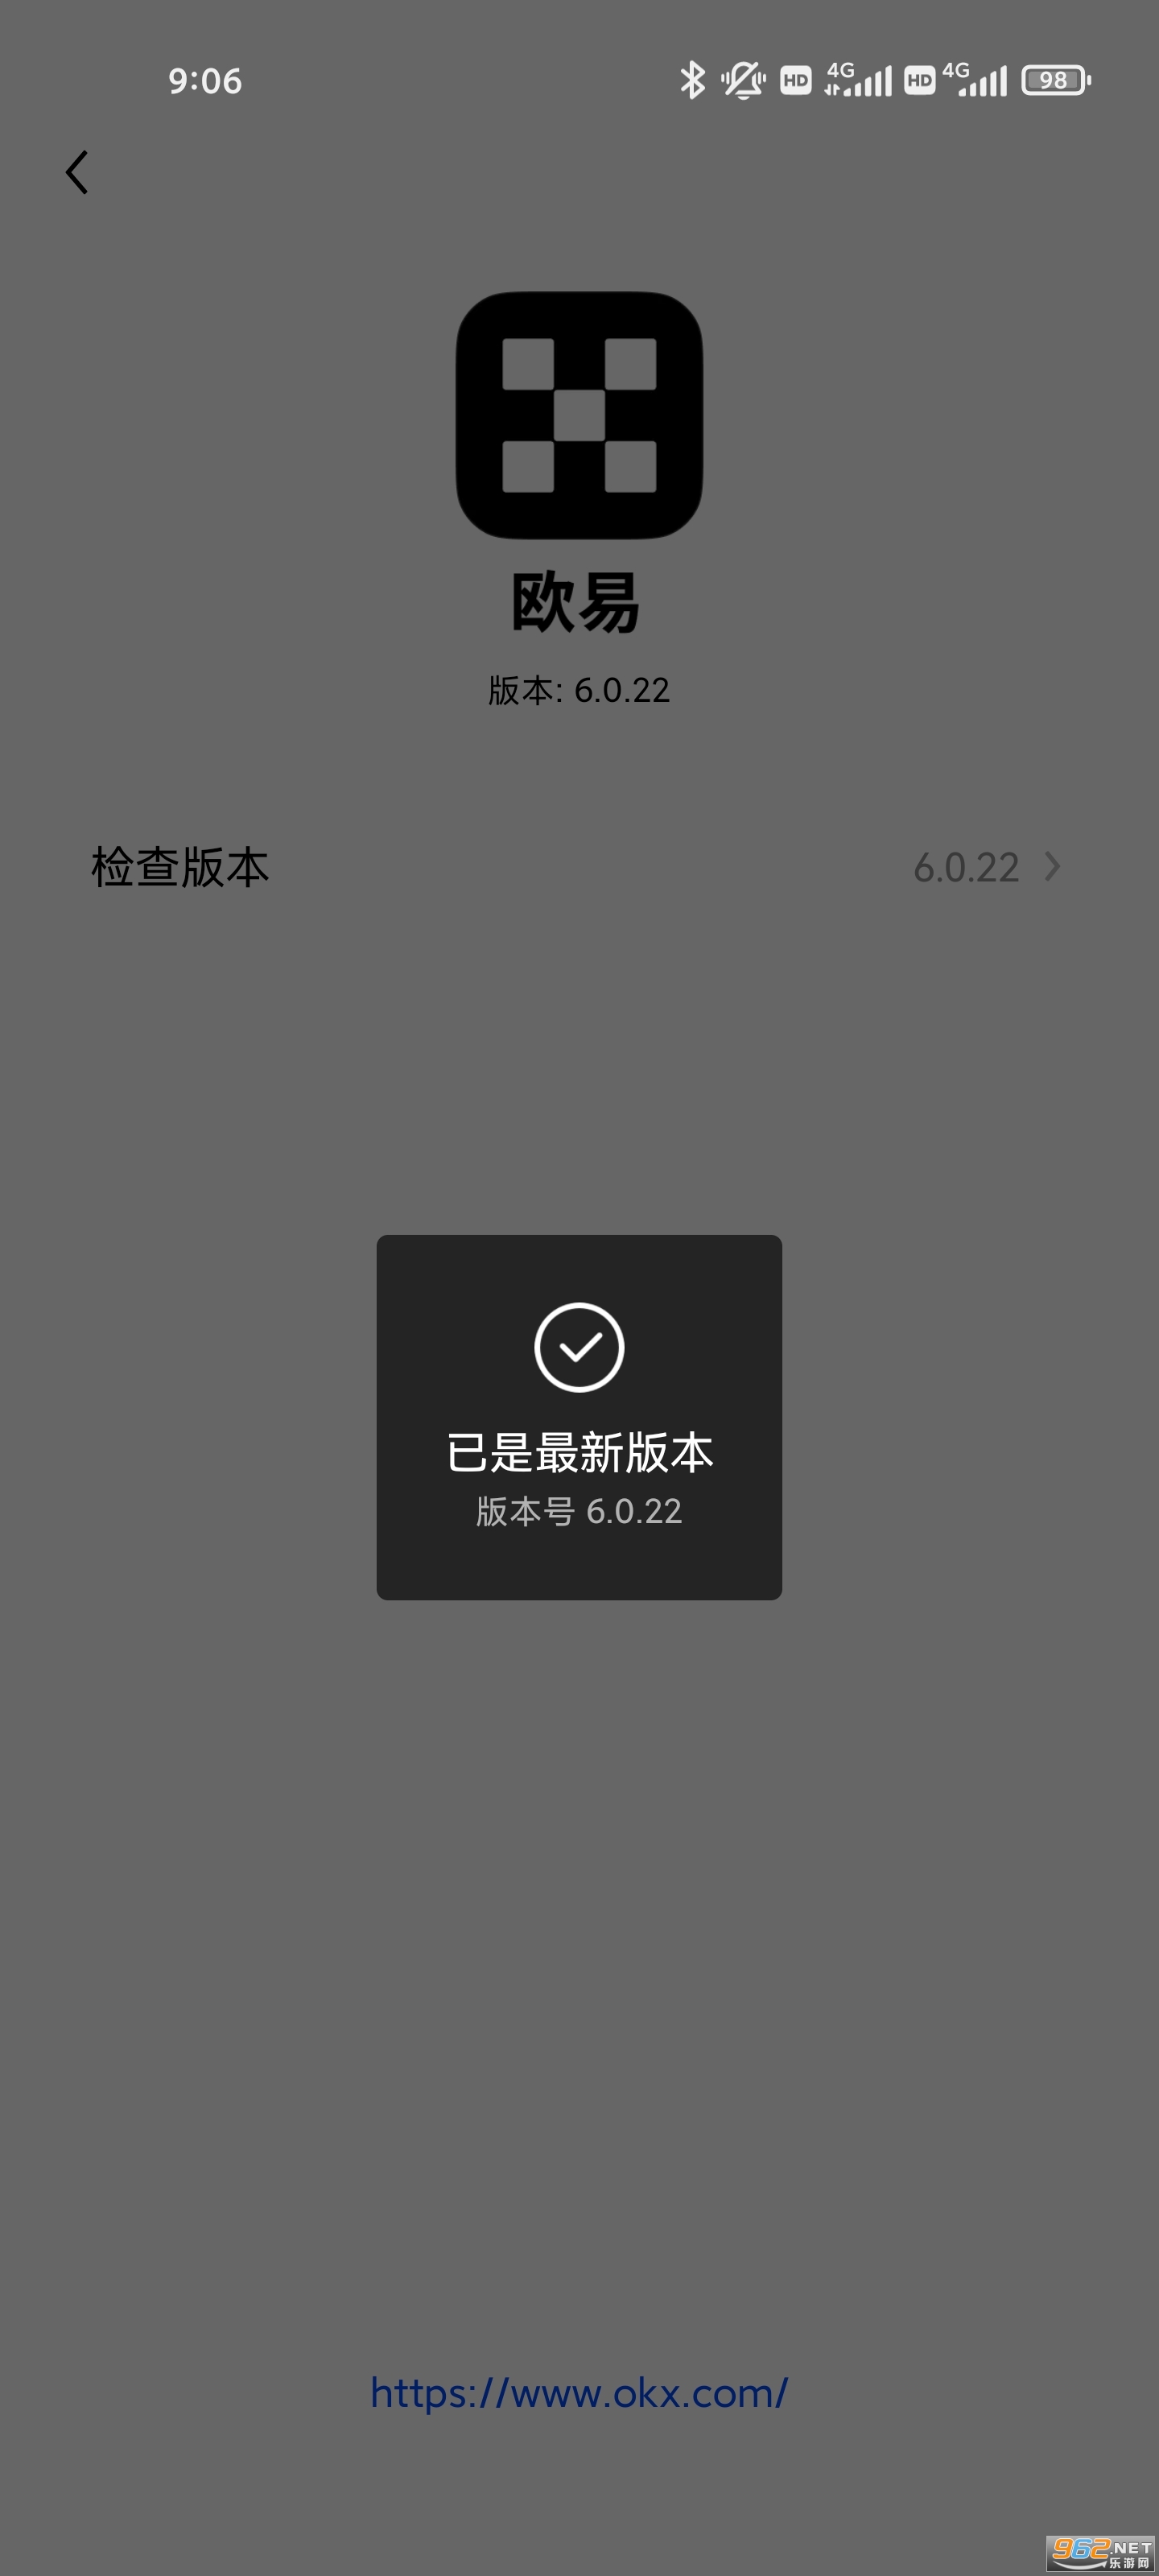 okx更新app v6.0.22